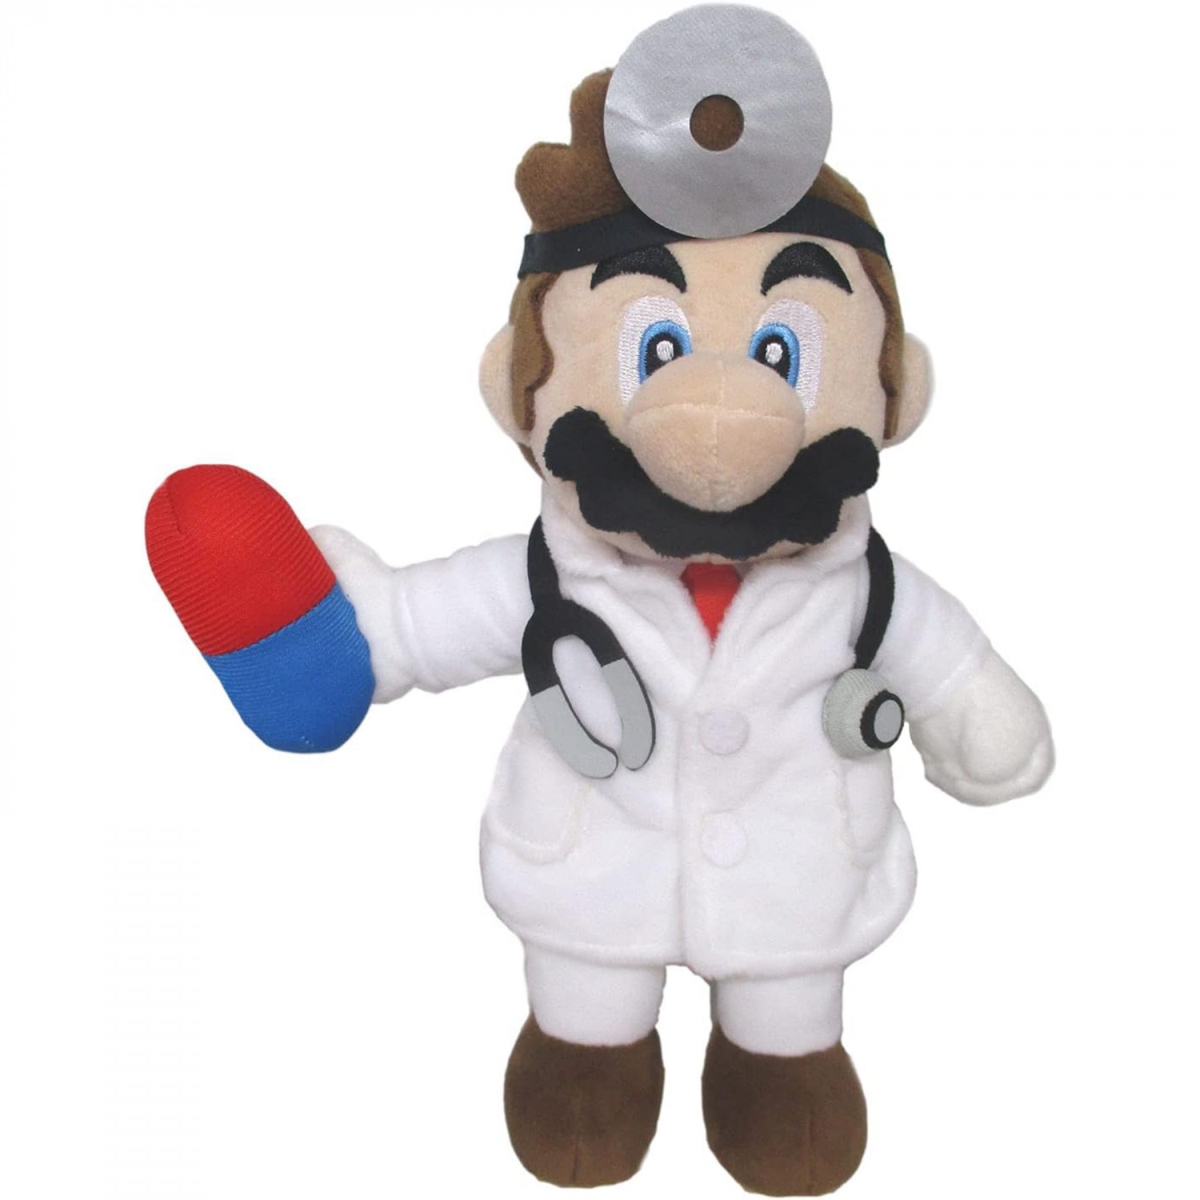 Picture of Super Mario Bros 872422 10 in. Super Mario Bros. Doctor Mario Plush Figure